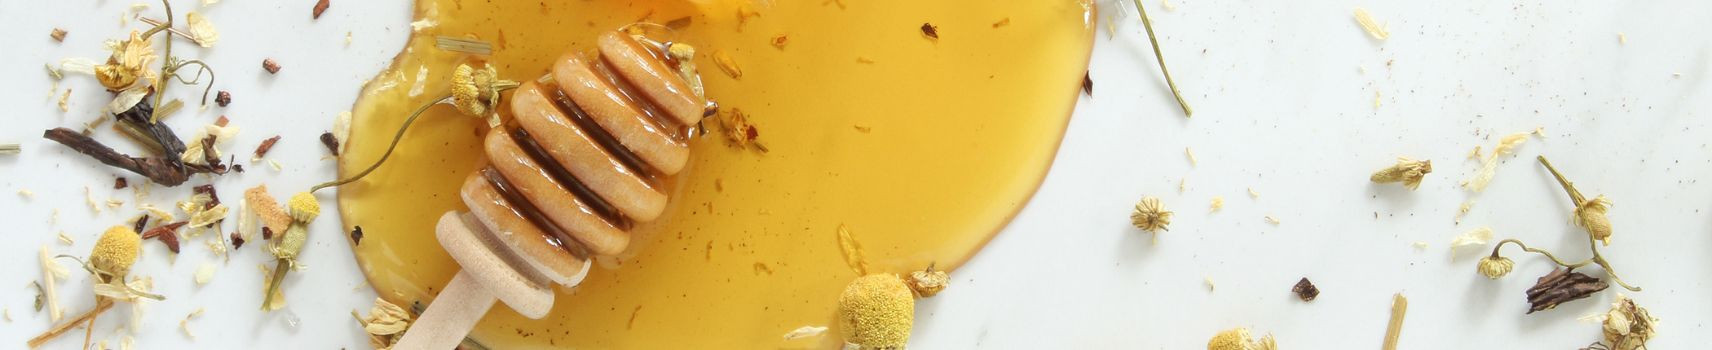 Miels artisanaux de nos apiculteurs de Provence